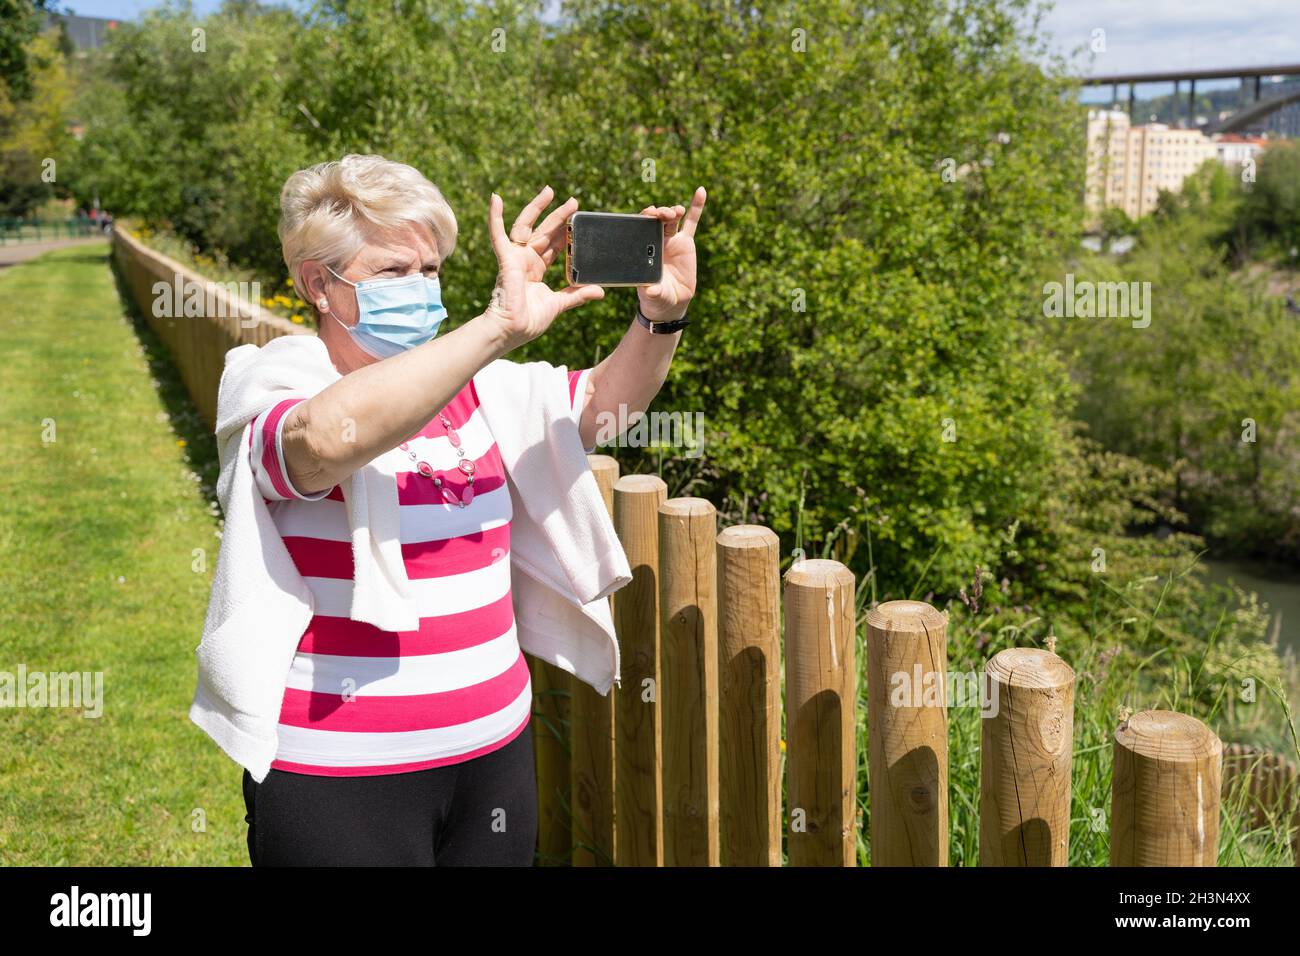 Femme âgée avec masque de visage faisant de la vidéo panoramique avec téléphone portable au parc le jour ensoleillé.Femme aînée debout près d'une clôture, prenant des photos avec un smartphone Banque D'Images